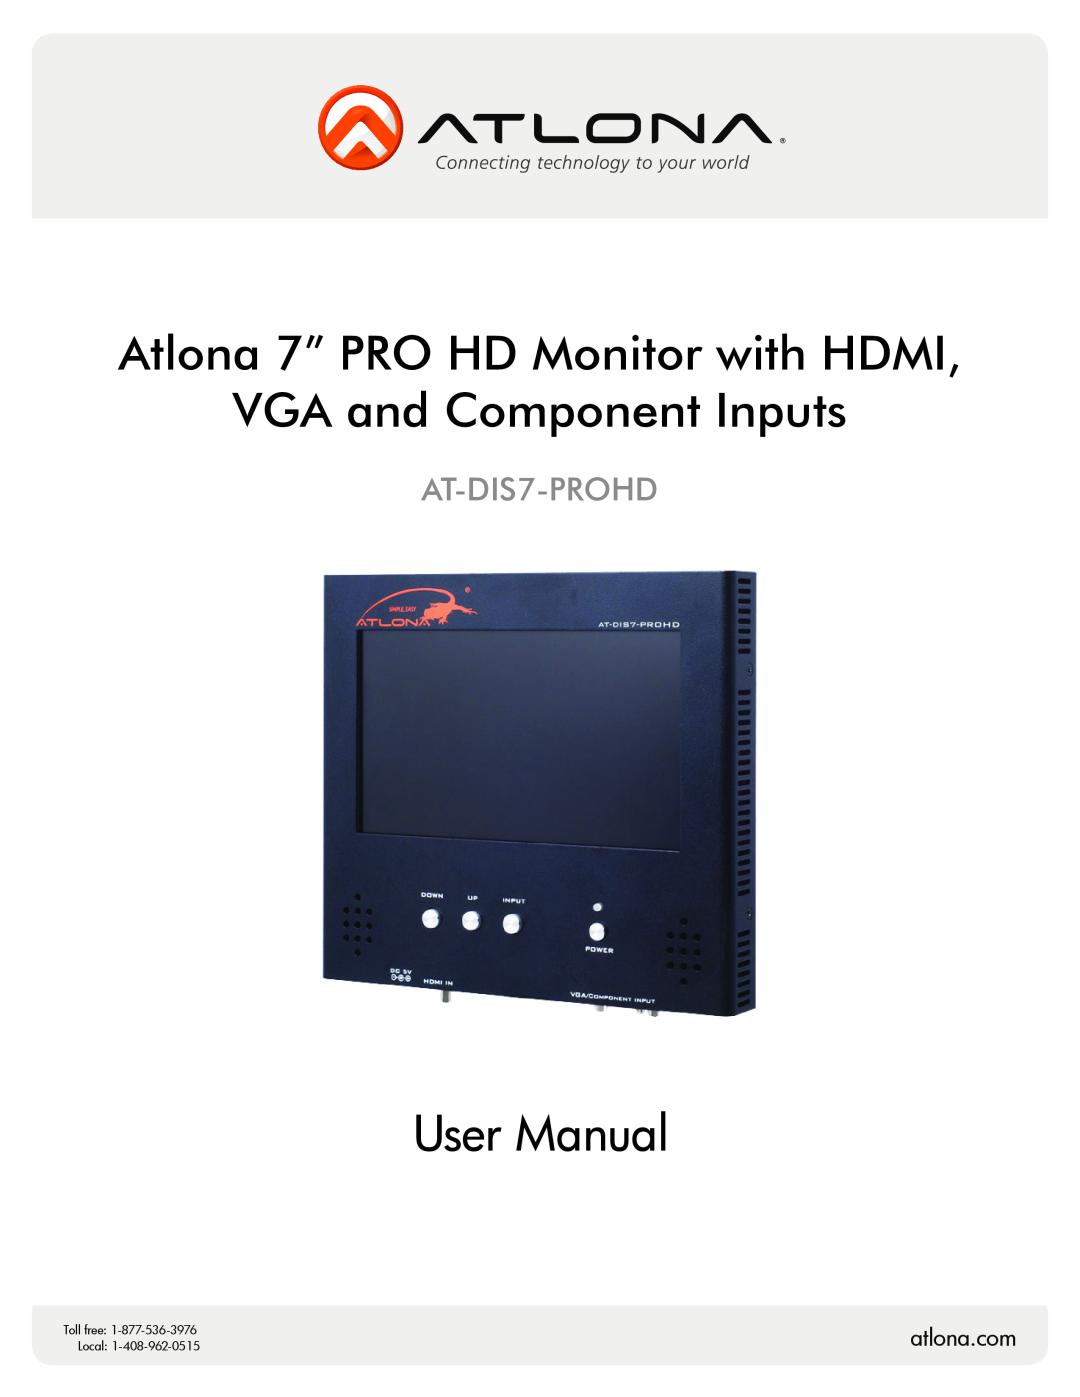 Atlona AT-DIS7-PROHD user manual Atlona 7” PRO HD Monitor with HDMI VGA and Component Inputs, atlona.com, Toll free, Local 